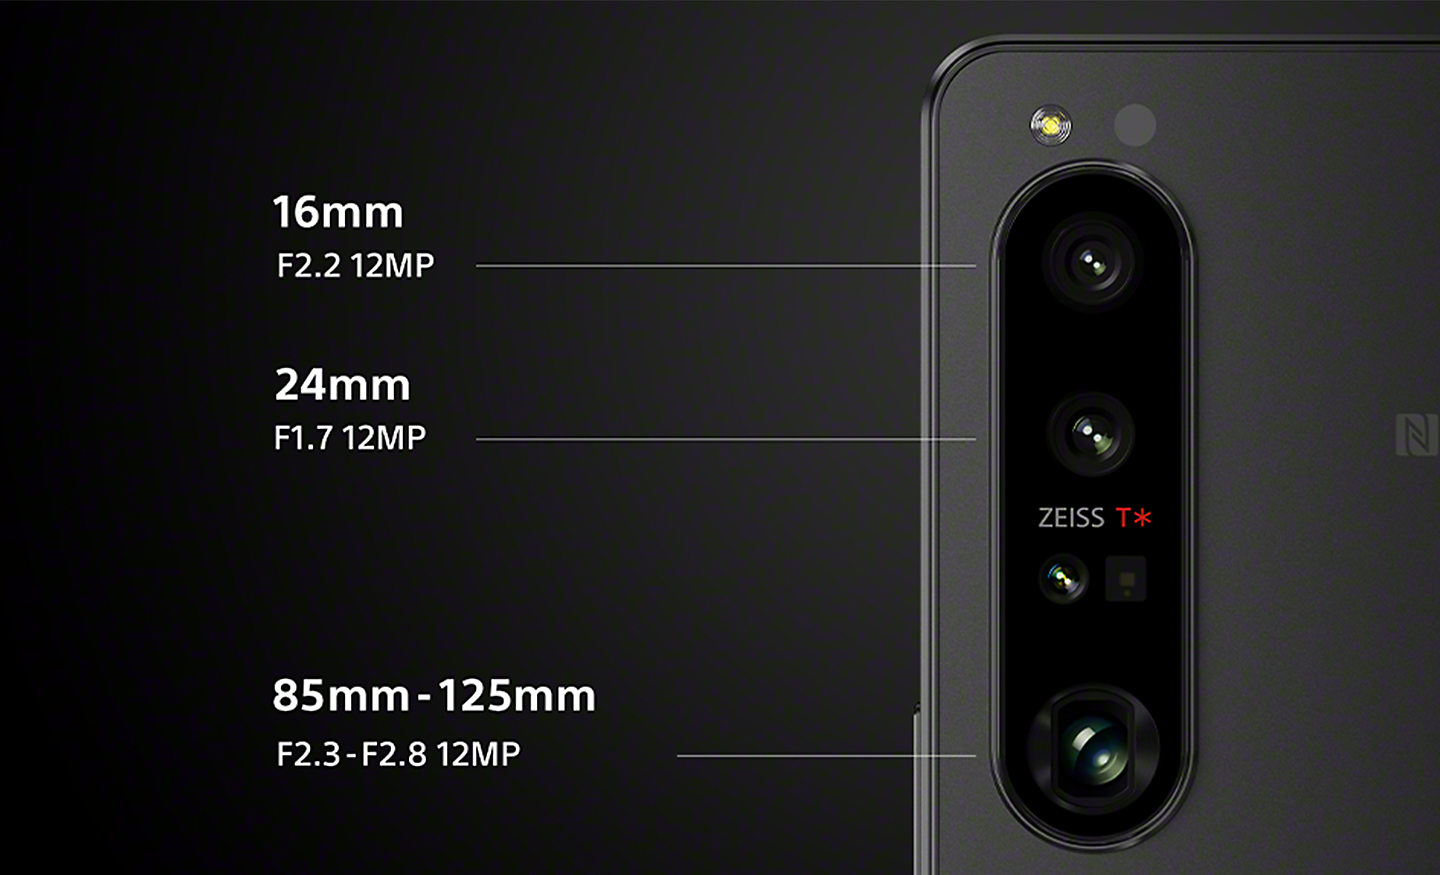 Gros plan sur l’appareil photo triple objectif du Xperia 1 IV avec des annotations pour le 16 mm F2.2 12 Mpx, le 24 mm F1.7 12 Mpx et le 85-125 mm F2.3-F2.8 12 Mpx